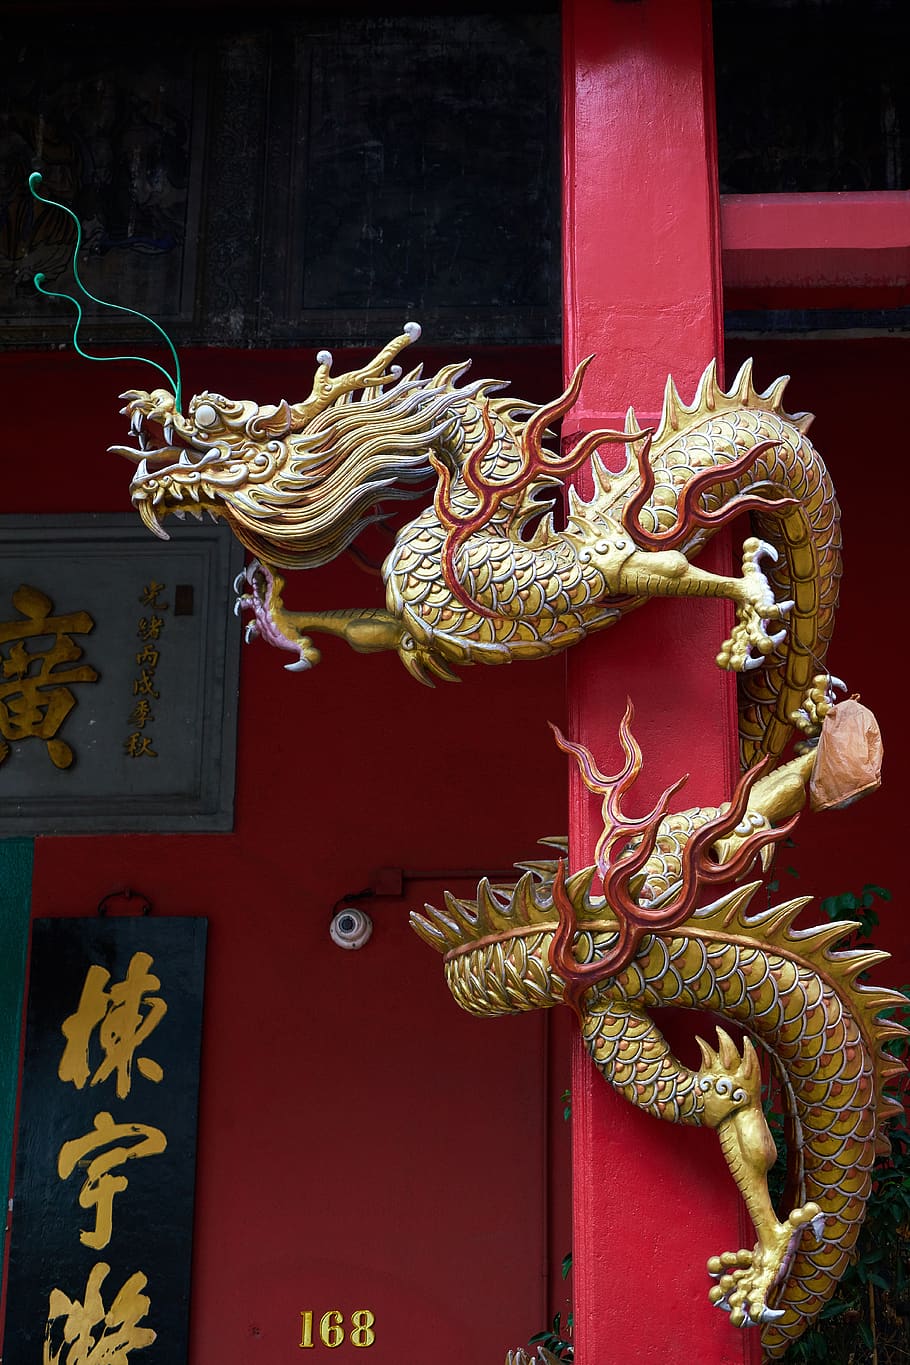 dragão, escultura, ornamento, templo, religião, fé, oração, cidade antiga, composição, taoísmo